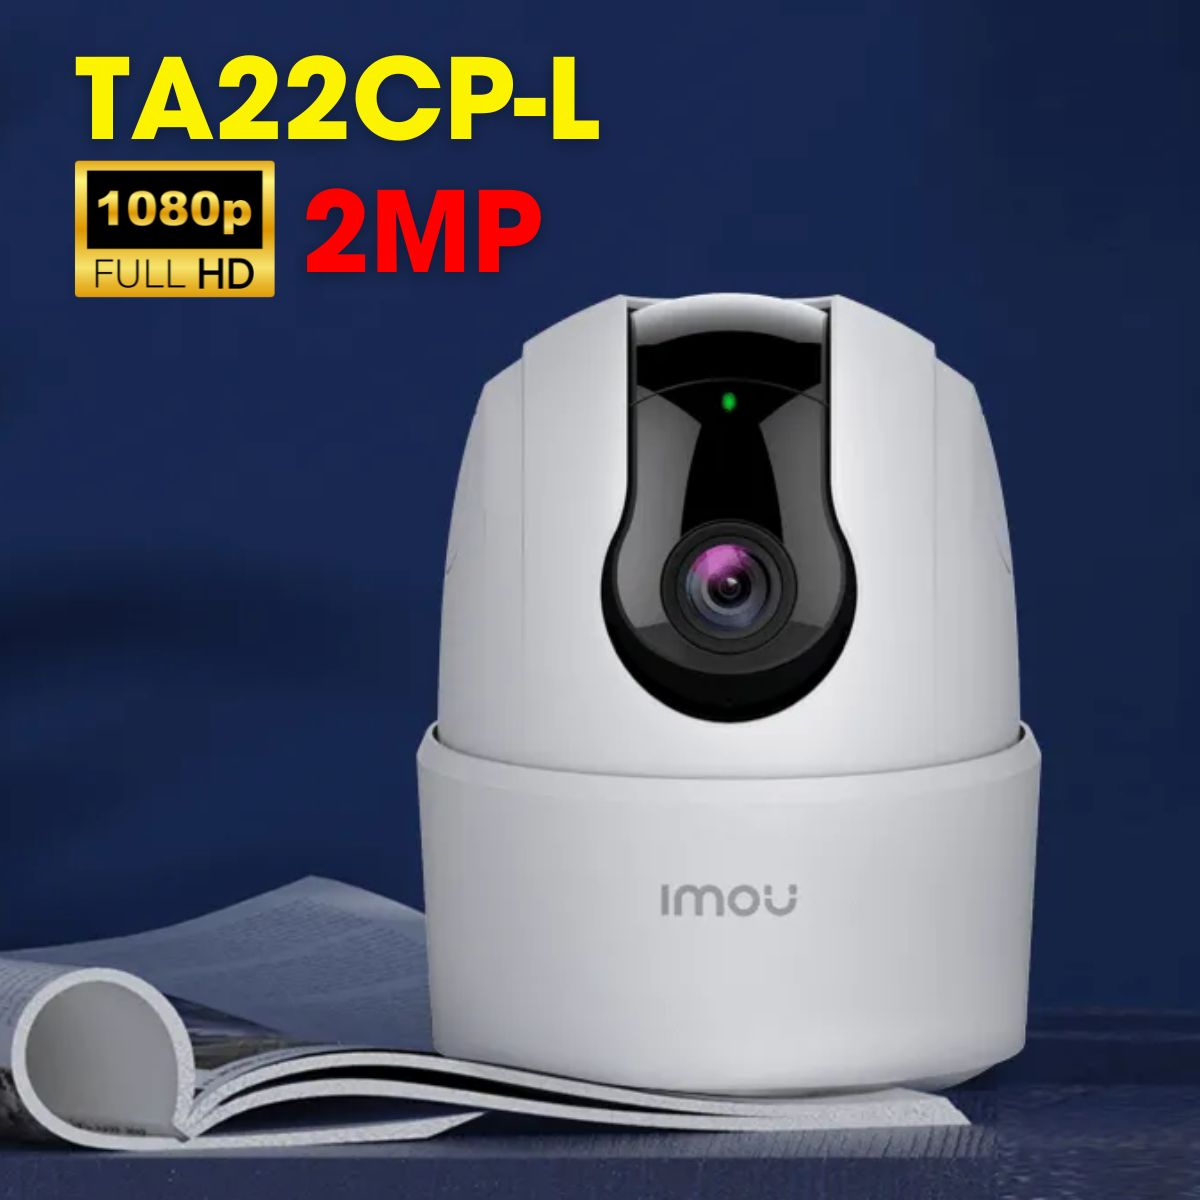 Camera IP wifi trong nhà 2MP 1080P IMOU TA22CP-L đàm thoại 2 chiều, hồng ngoại 10m